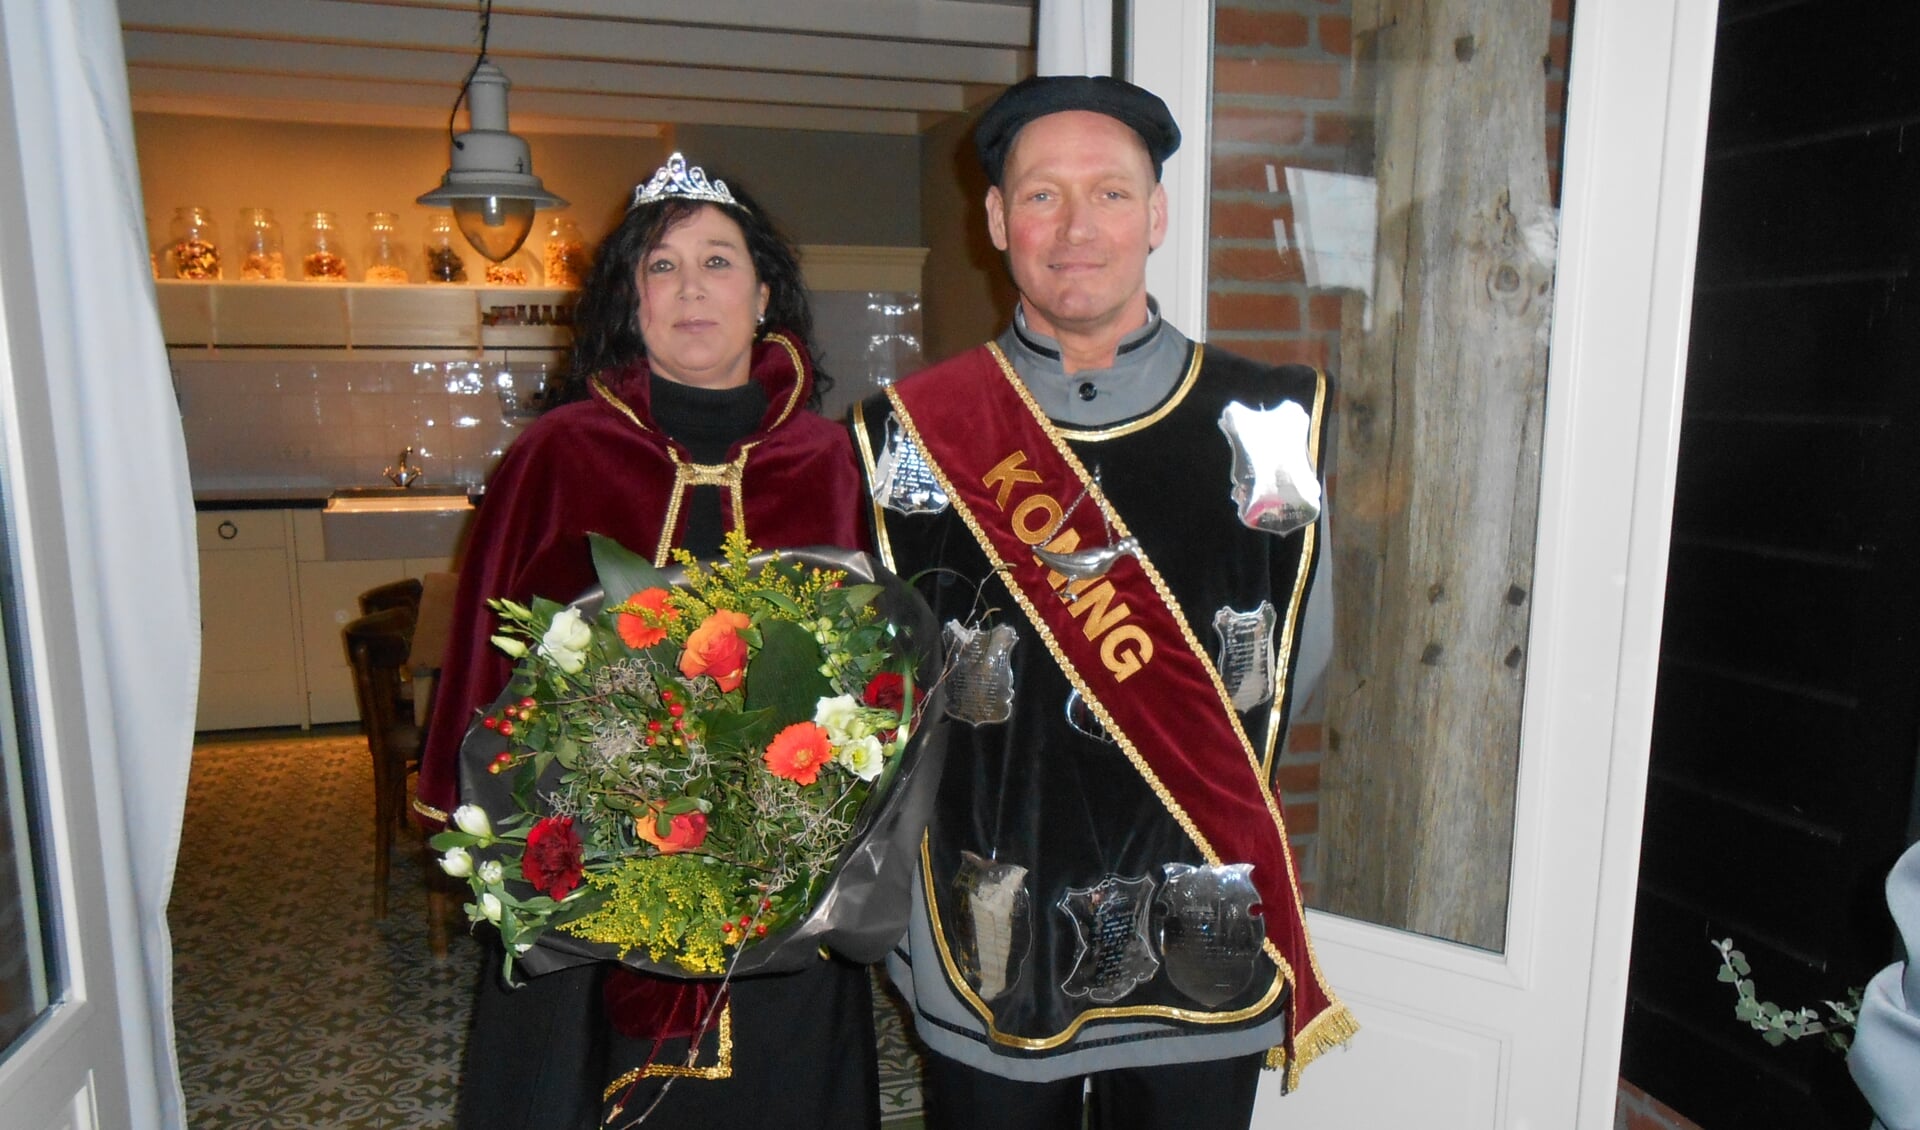 Koning Peter Mutsters en Koningin Inge Mutsters.